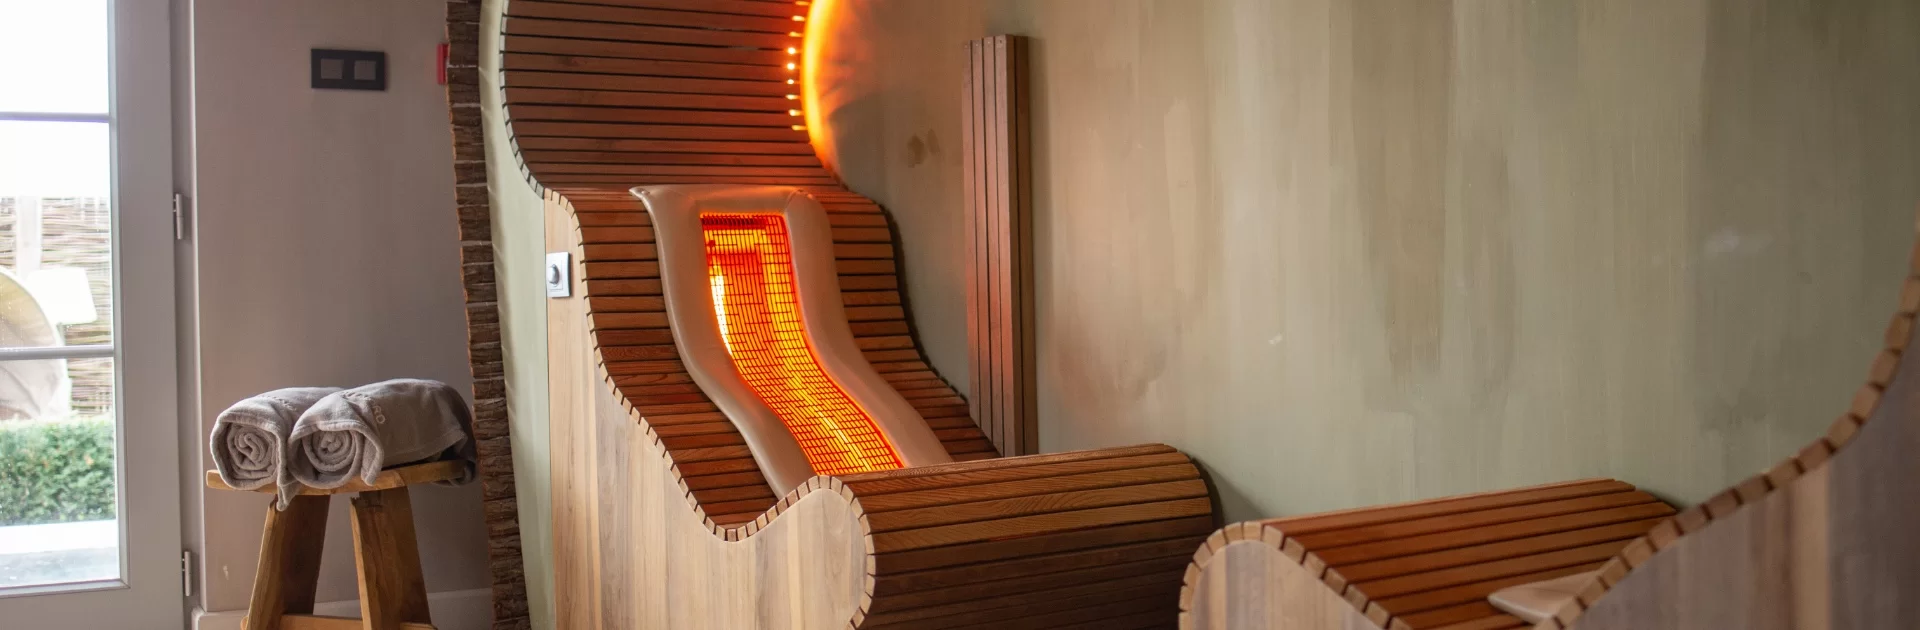 sauna infrarouge haut de gamme 2 places